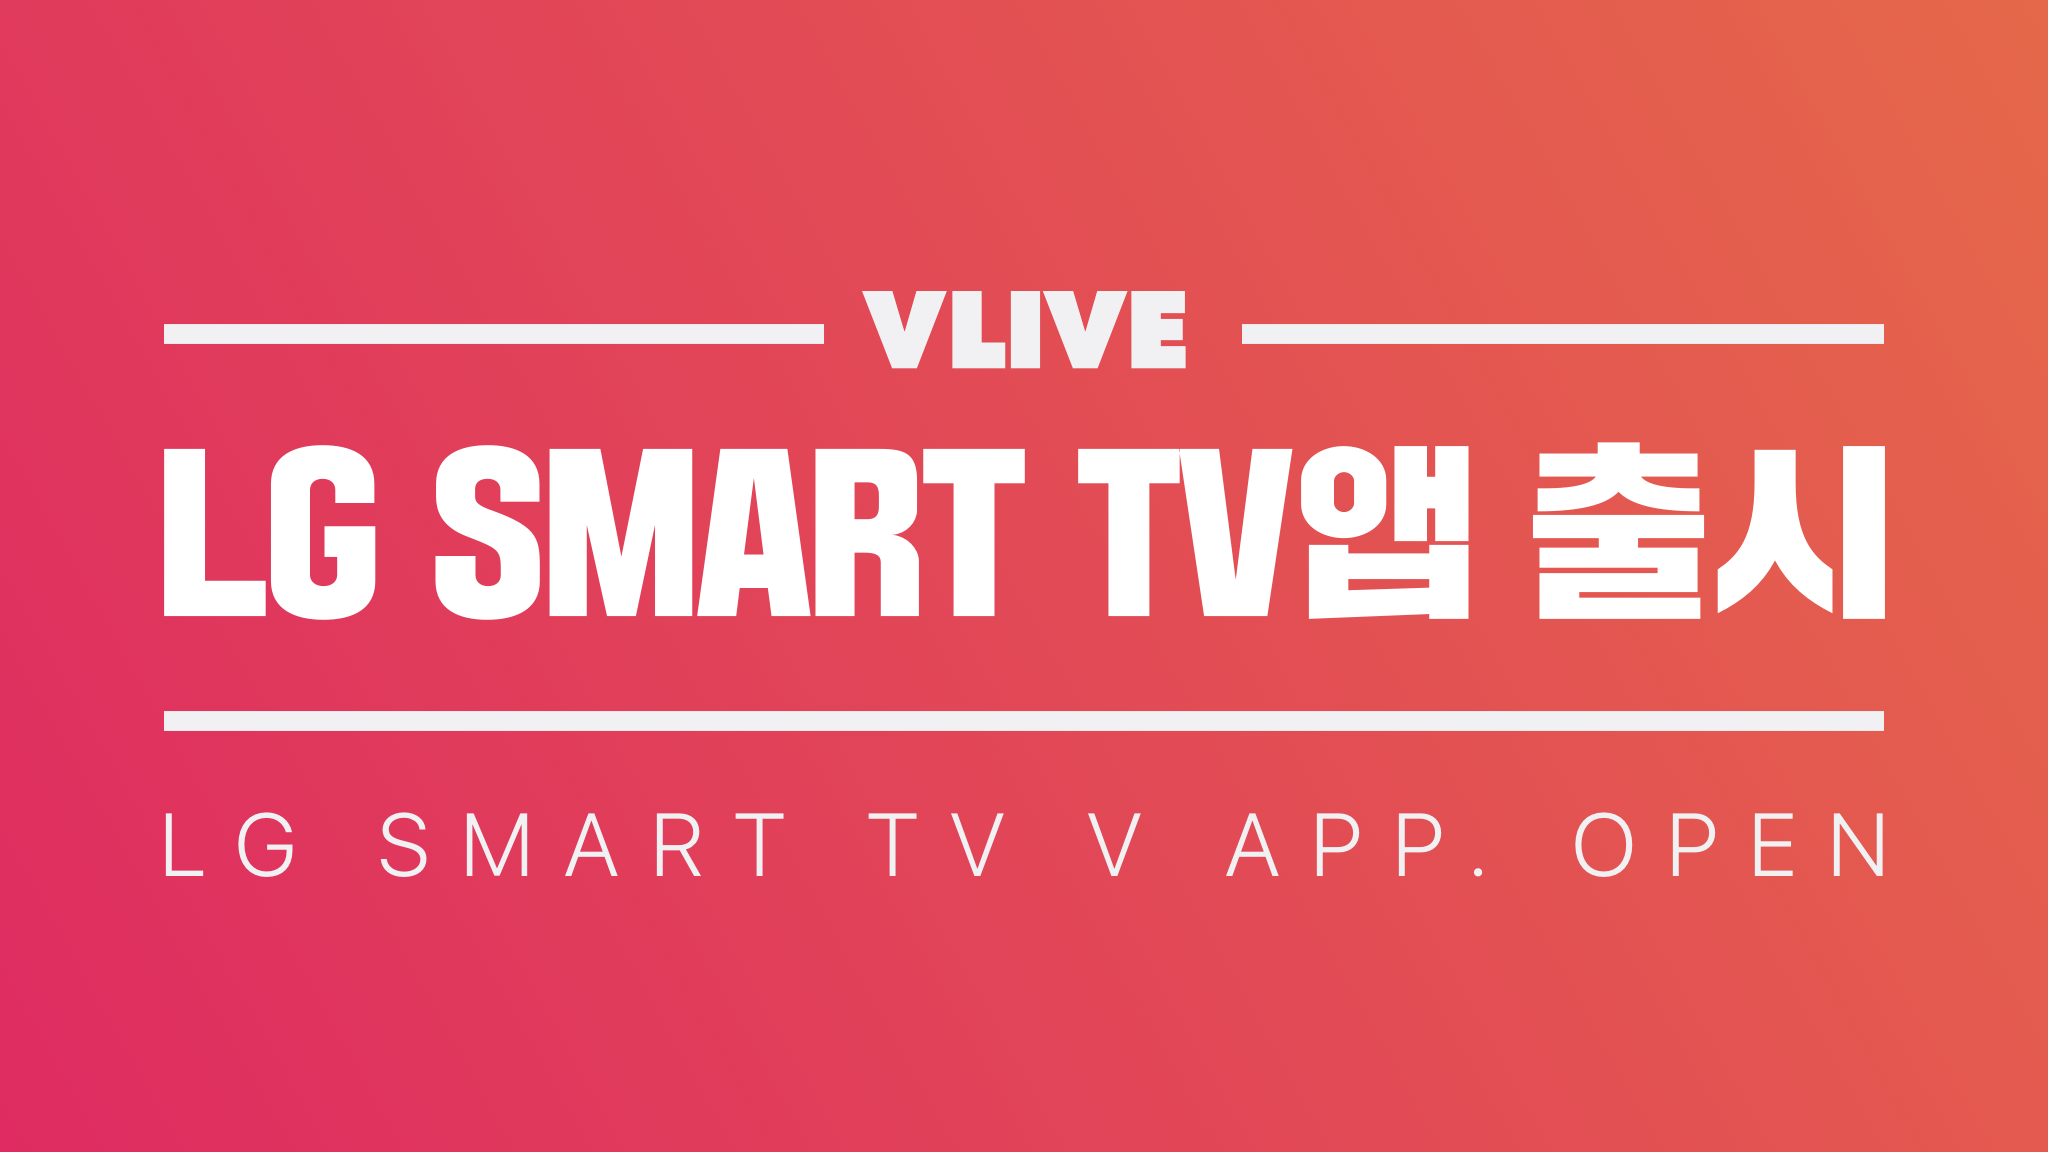 vlive app on samsung smart tv